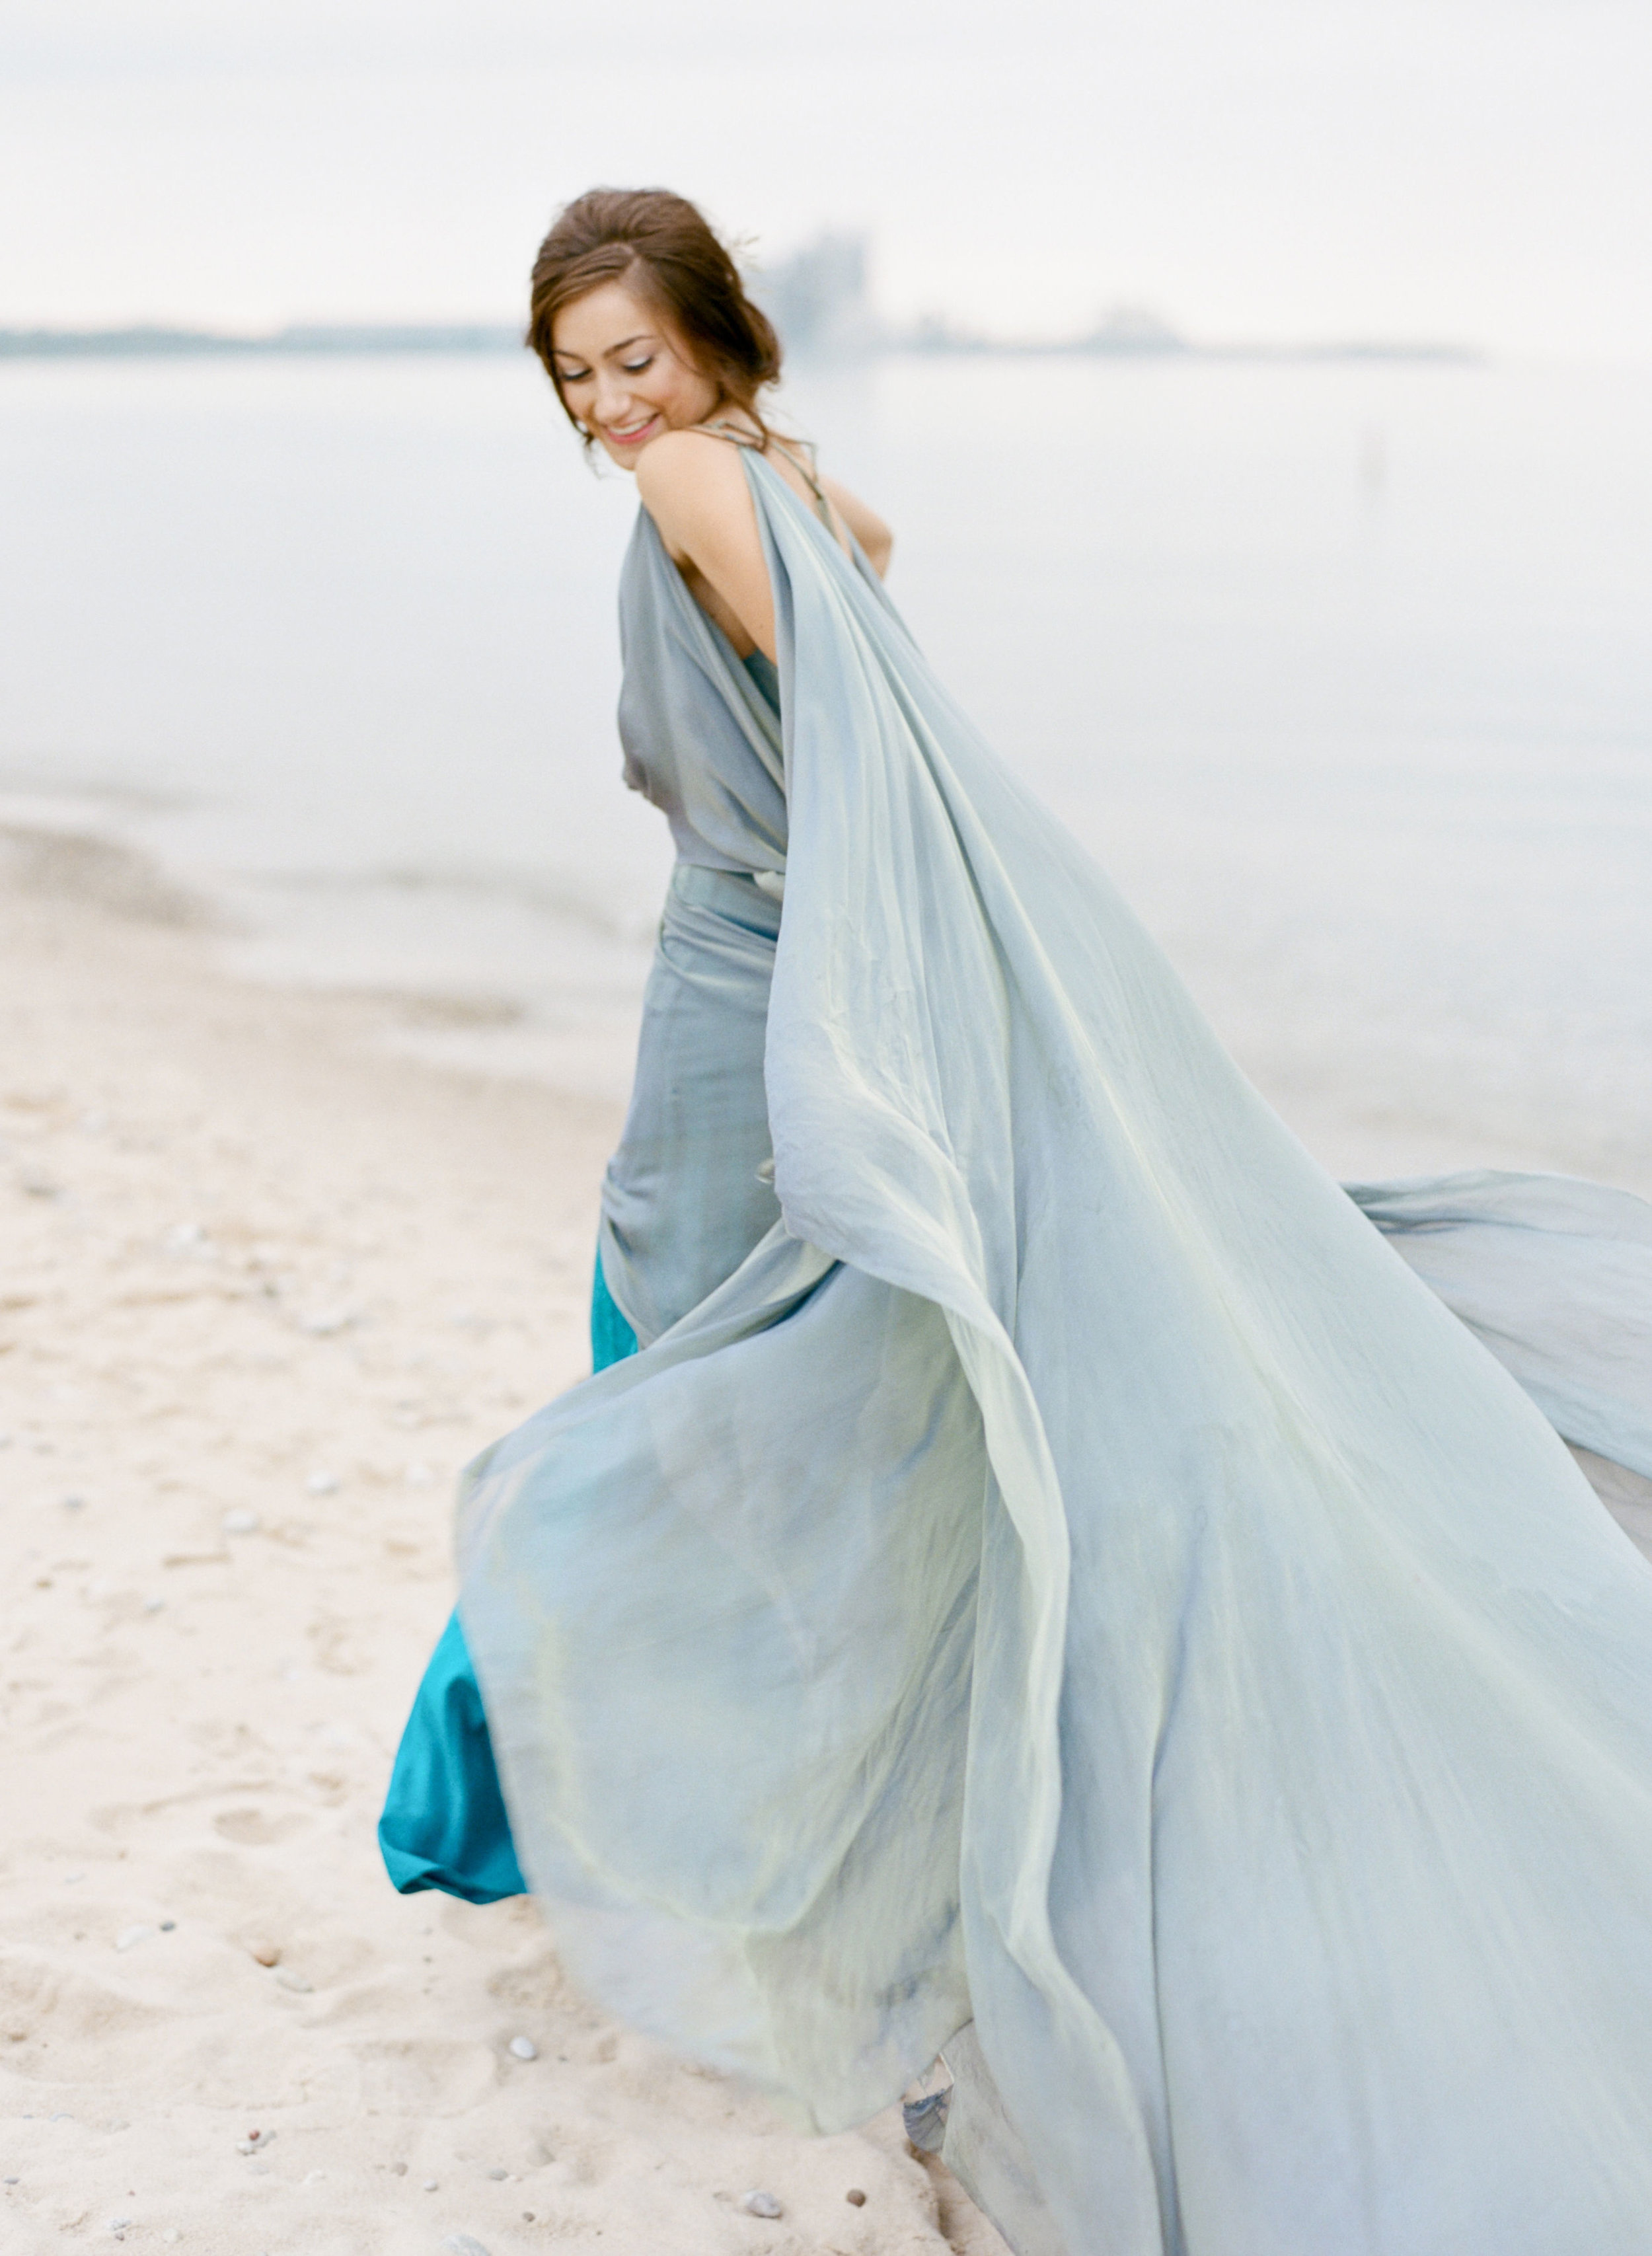 Ianassa 6 - relaxed blue flowing beach wedding dress.jpg